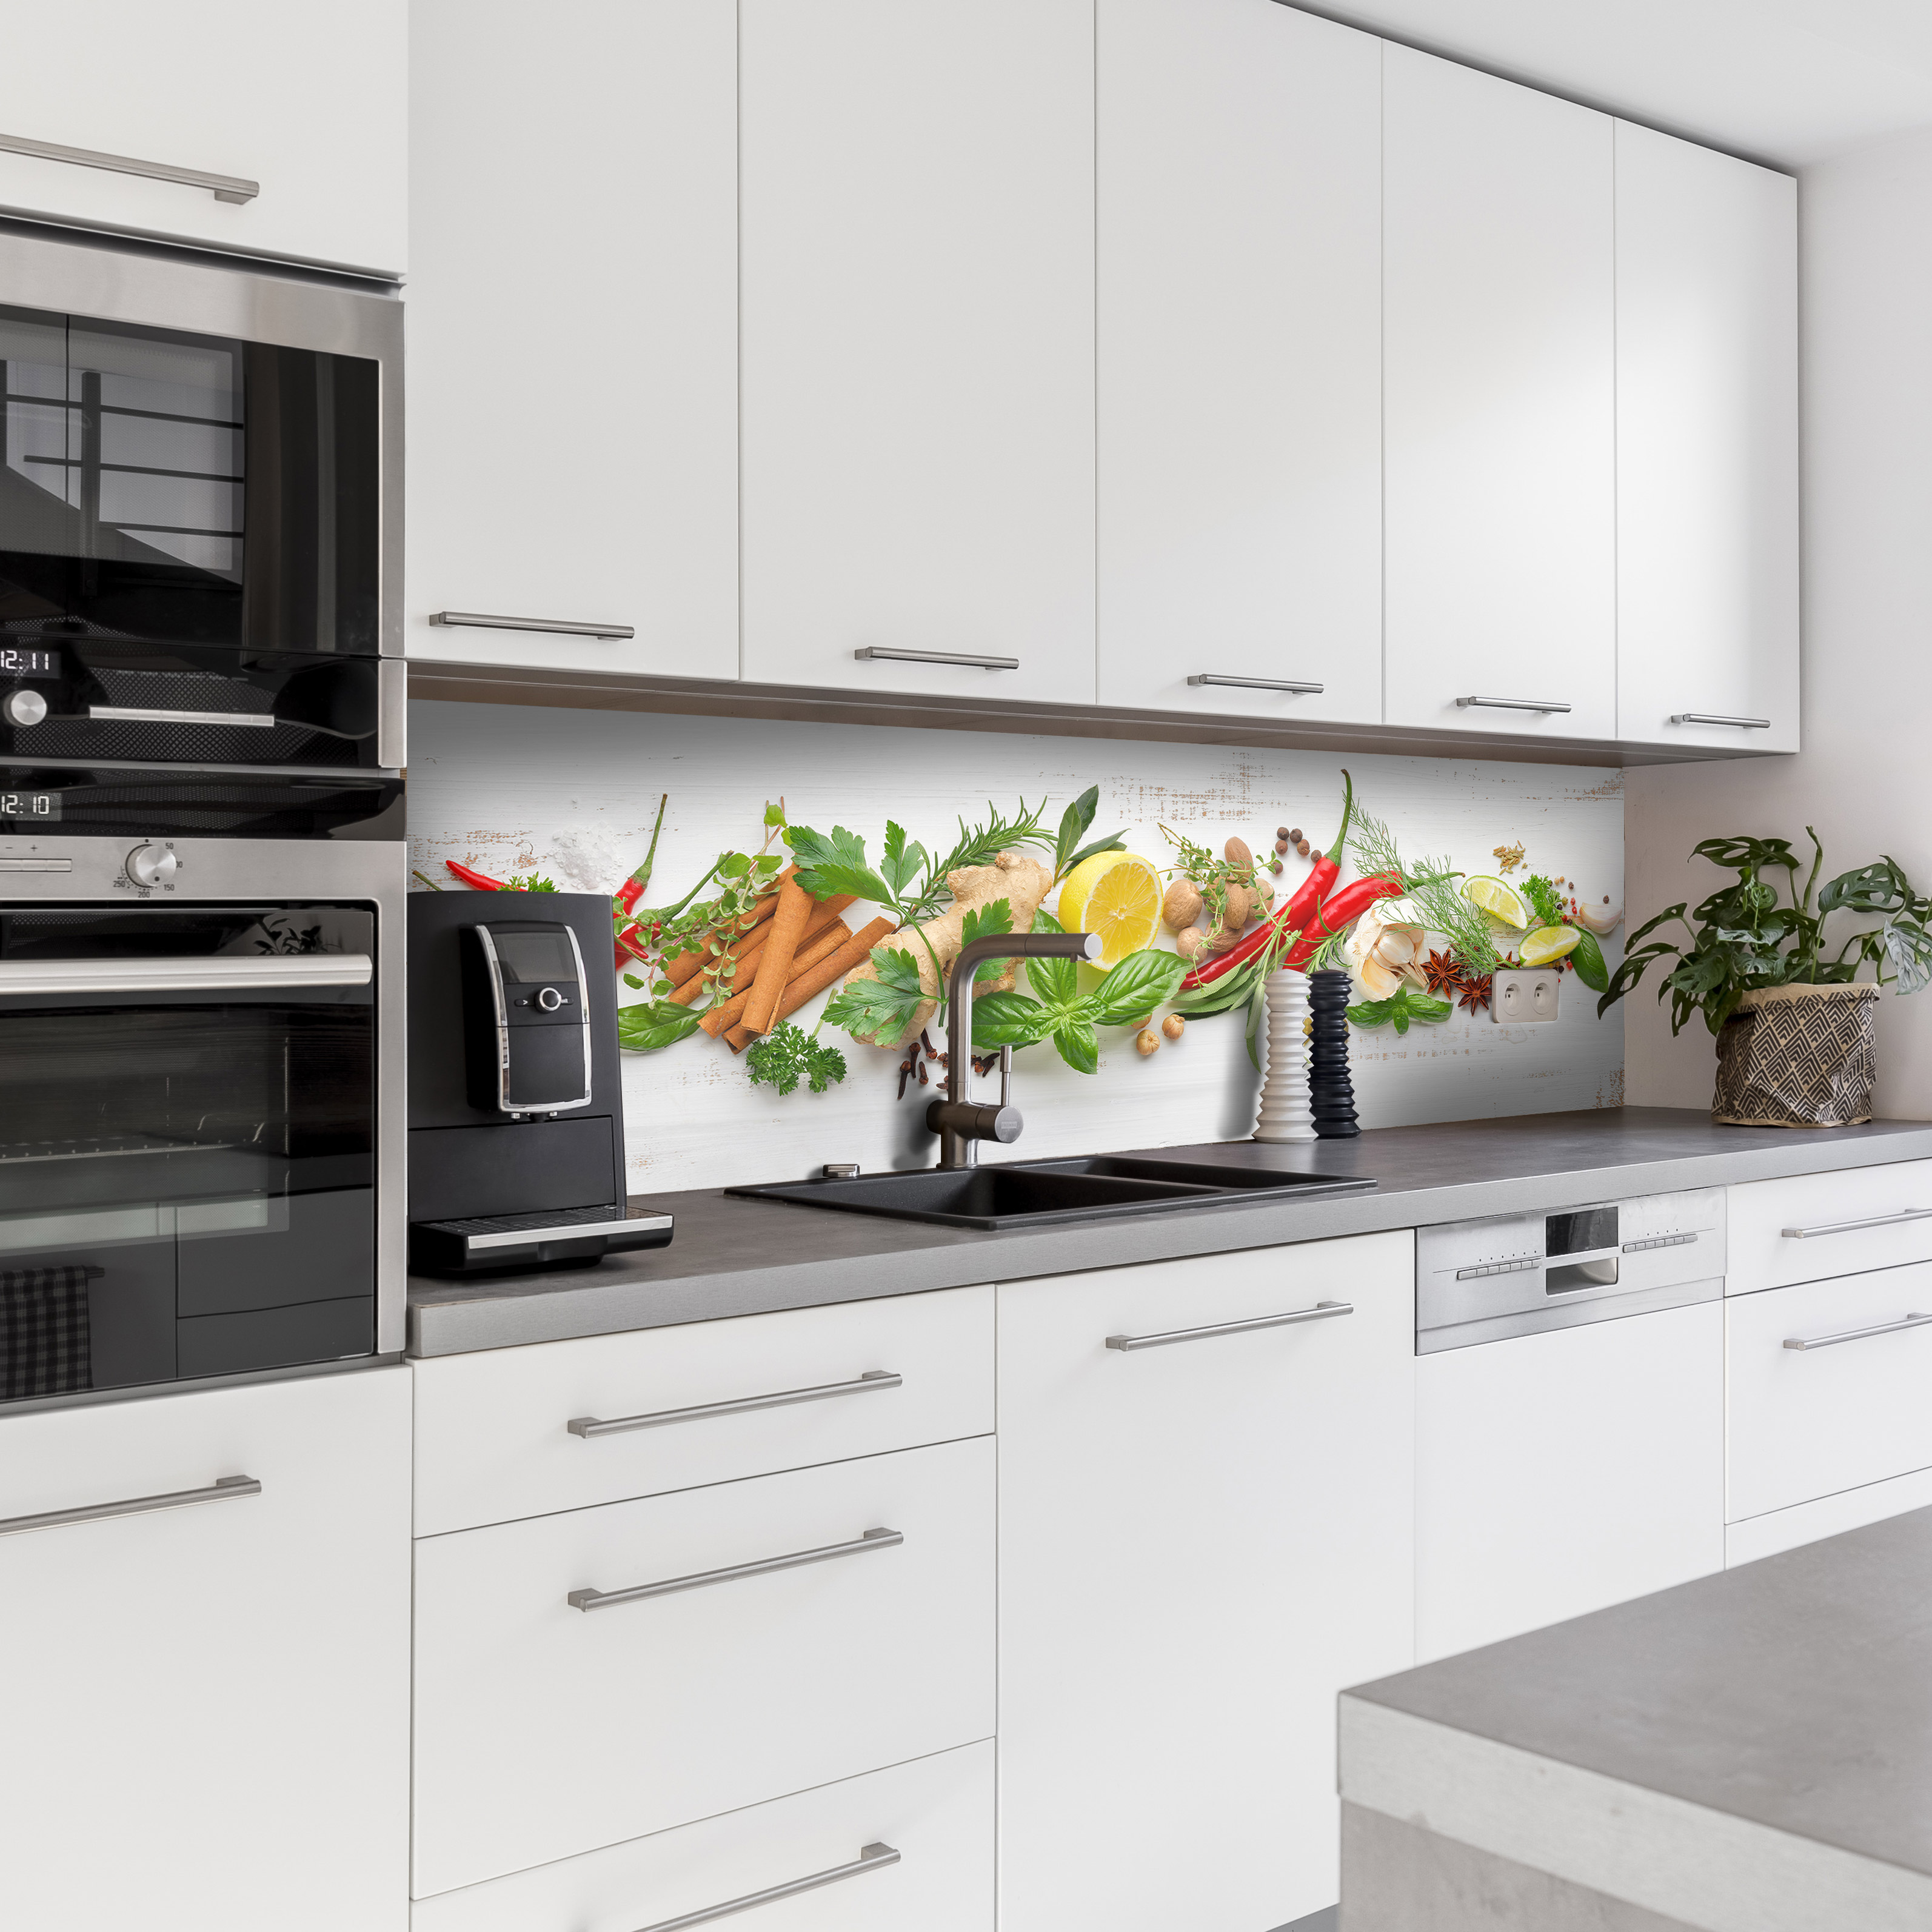 Küchenrückwand mit Obst & Gemüse V2 Motiv als Fliesenersatz und Spritzschutz